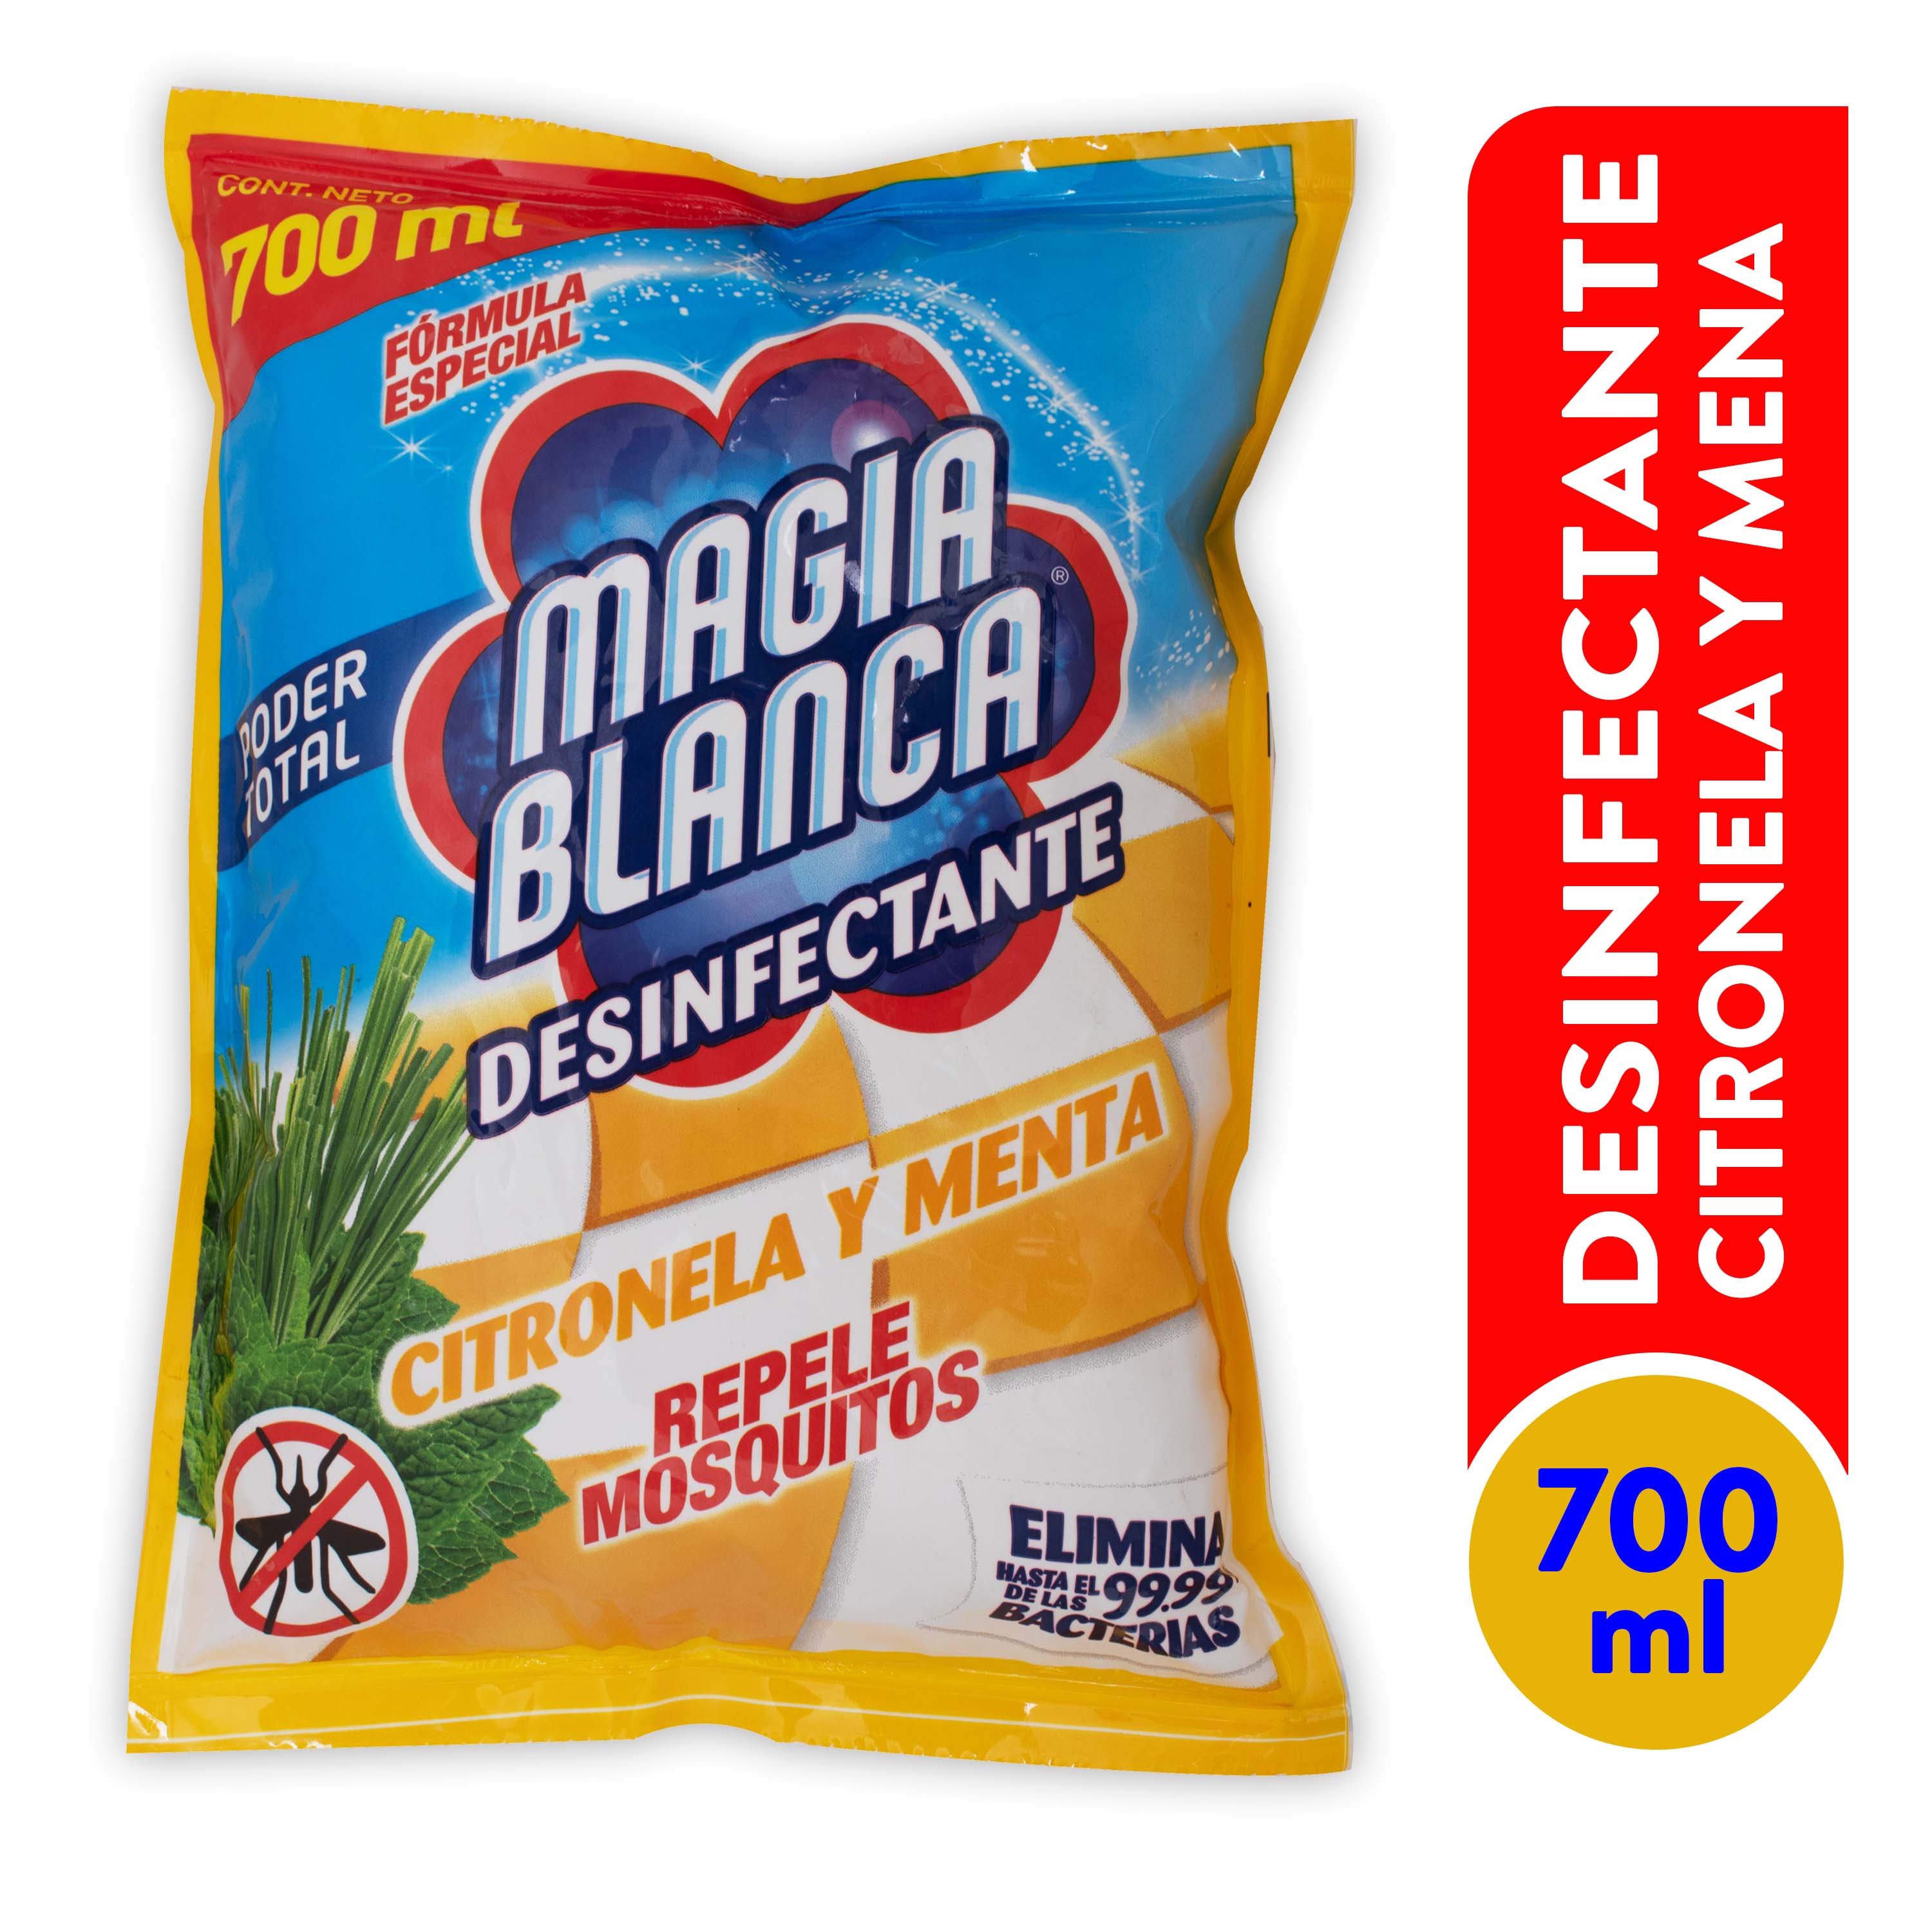 Desinfectante-Magia-Blanca-Citronela-Y-Menta-700-ml-1-16502